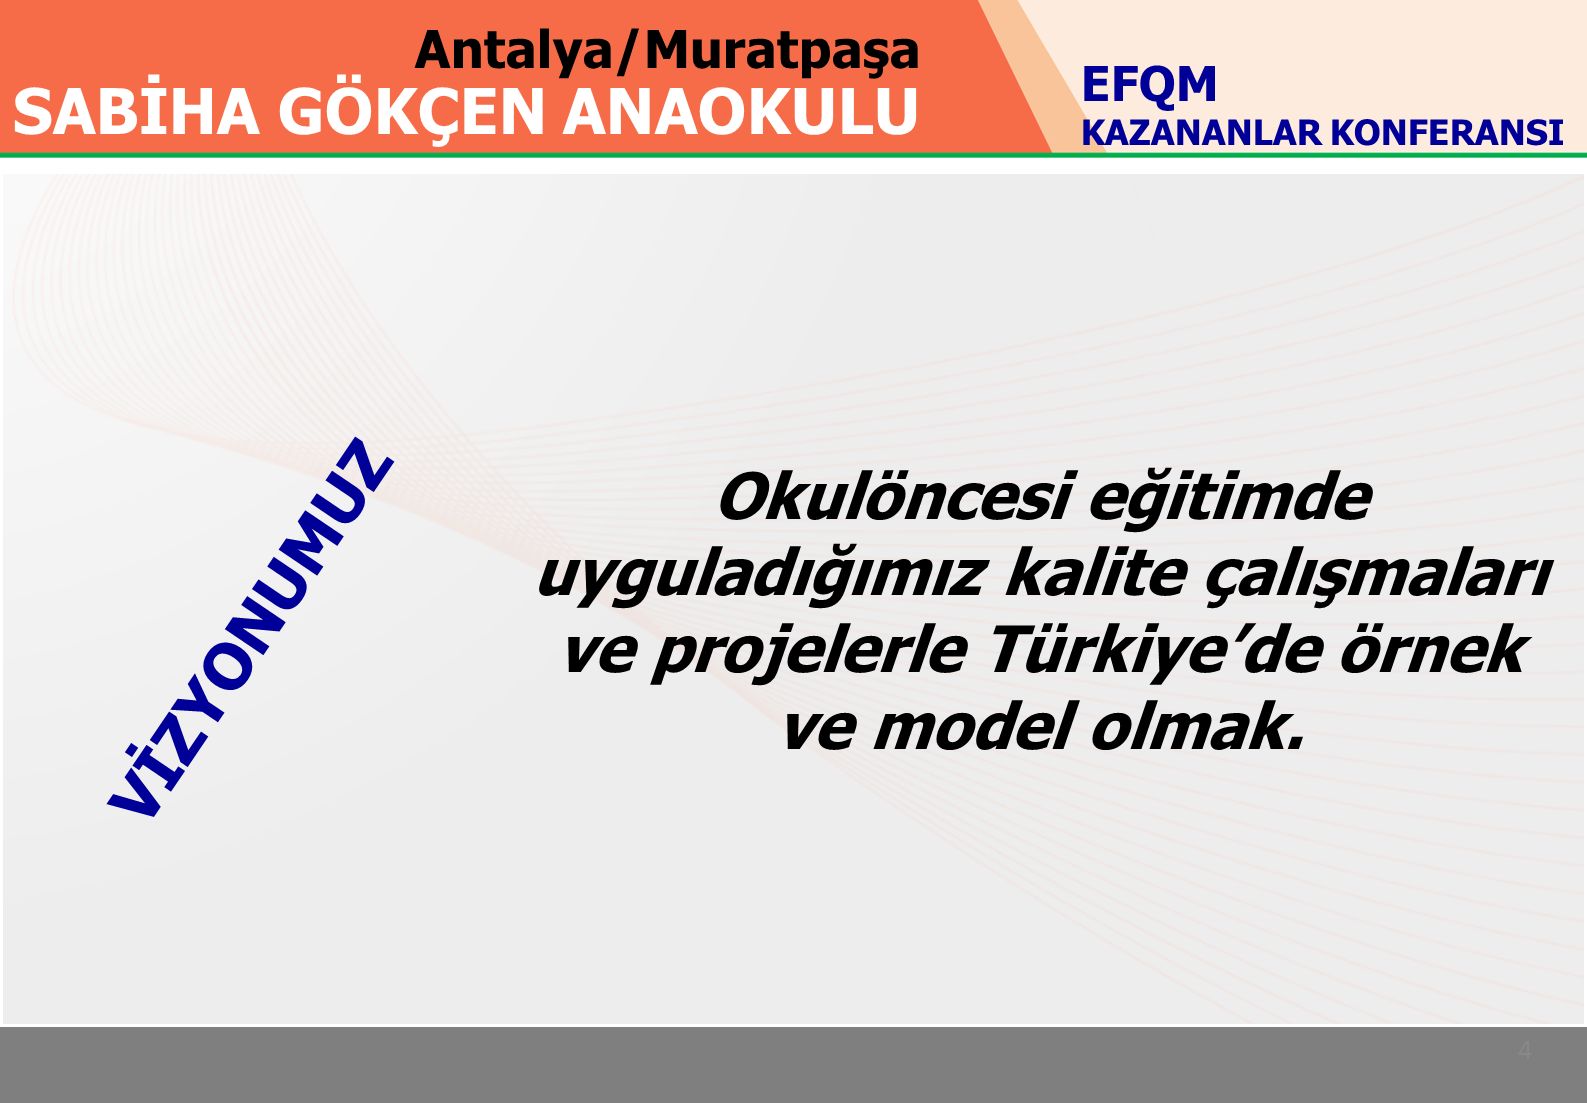 Antalya/Muratpaşa SABİHA GÖKÇEN ANAOKULU 4 Okulöncesi eğitimde uyguladığımız kalite çalışmaları ve projelerle Türkiye’de örnek ve model olmak.